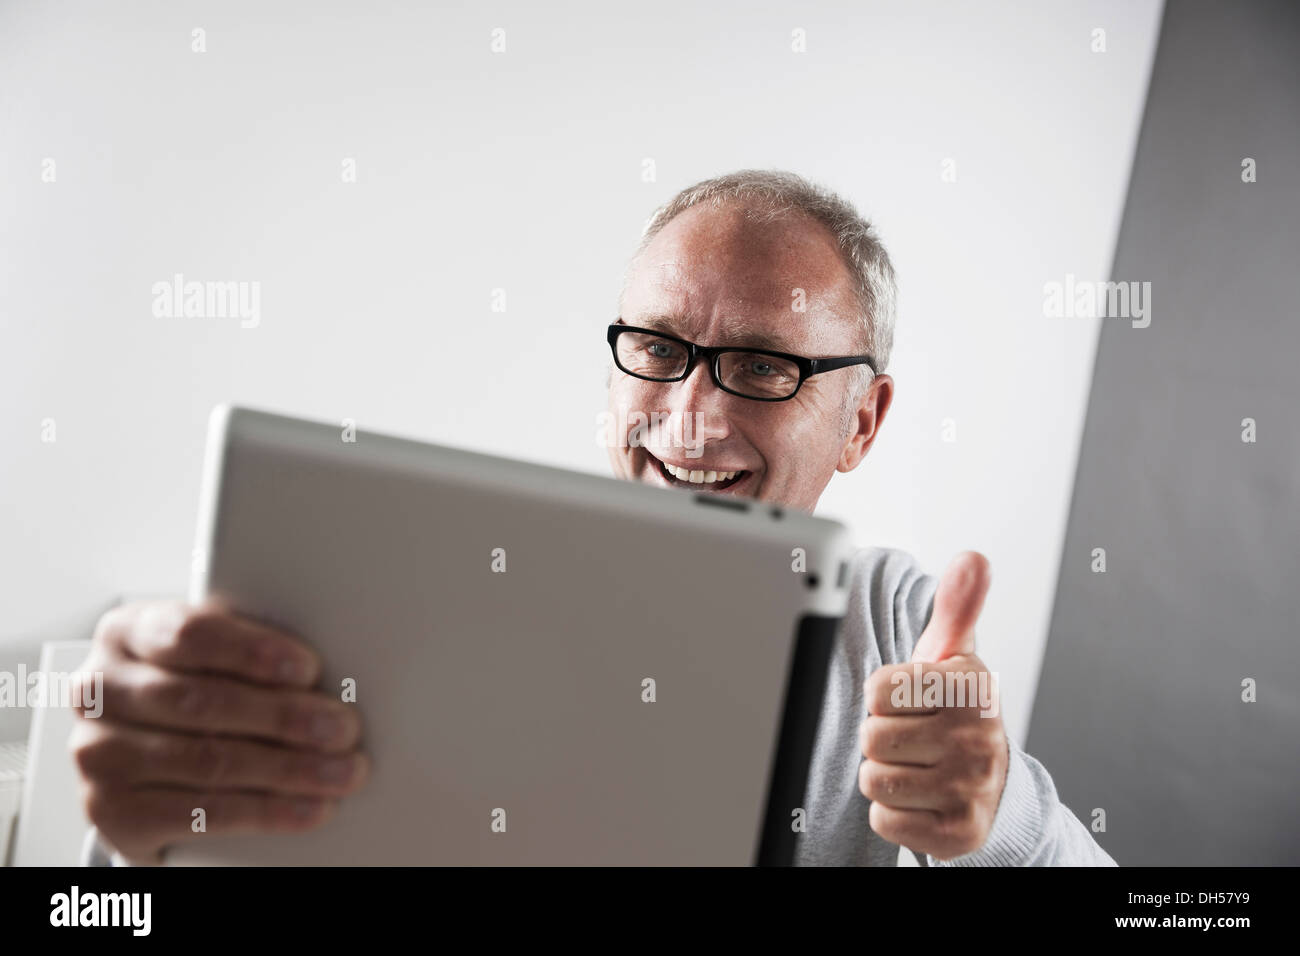 L'homme à l'aide d'un tablet PC, faisant un geste vers le pouce, Mannheim, Bade-Wurtemberg, Allemagne Banque D'Images